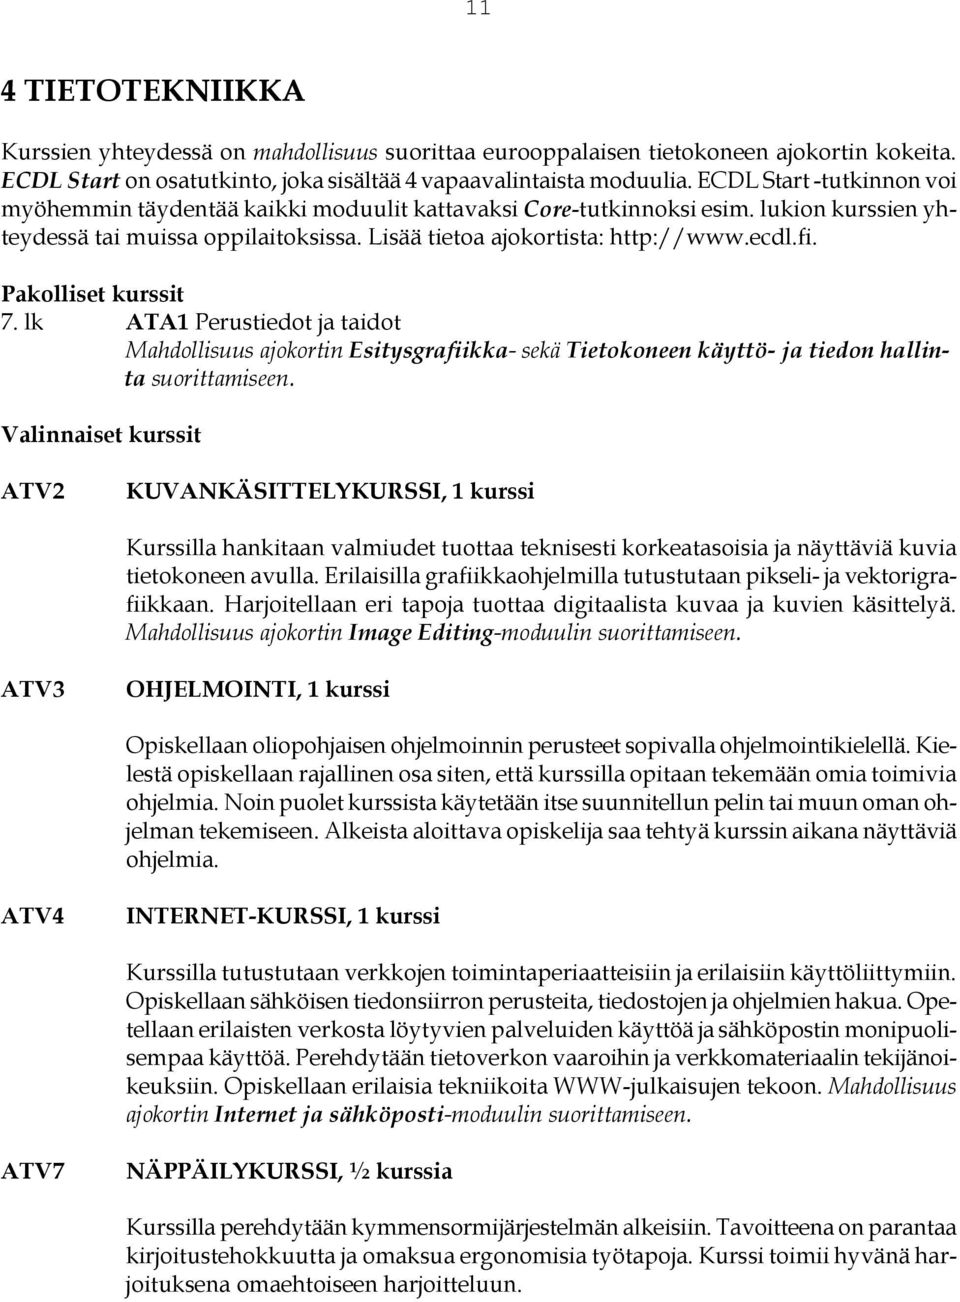 lk ATA1 Perustiedot ja taidot Mahdollisuus ajokortin Esitysgrafiikka- sekä Tietokoneen käyttö- ja tiedon hallinta suorittamiseen.